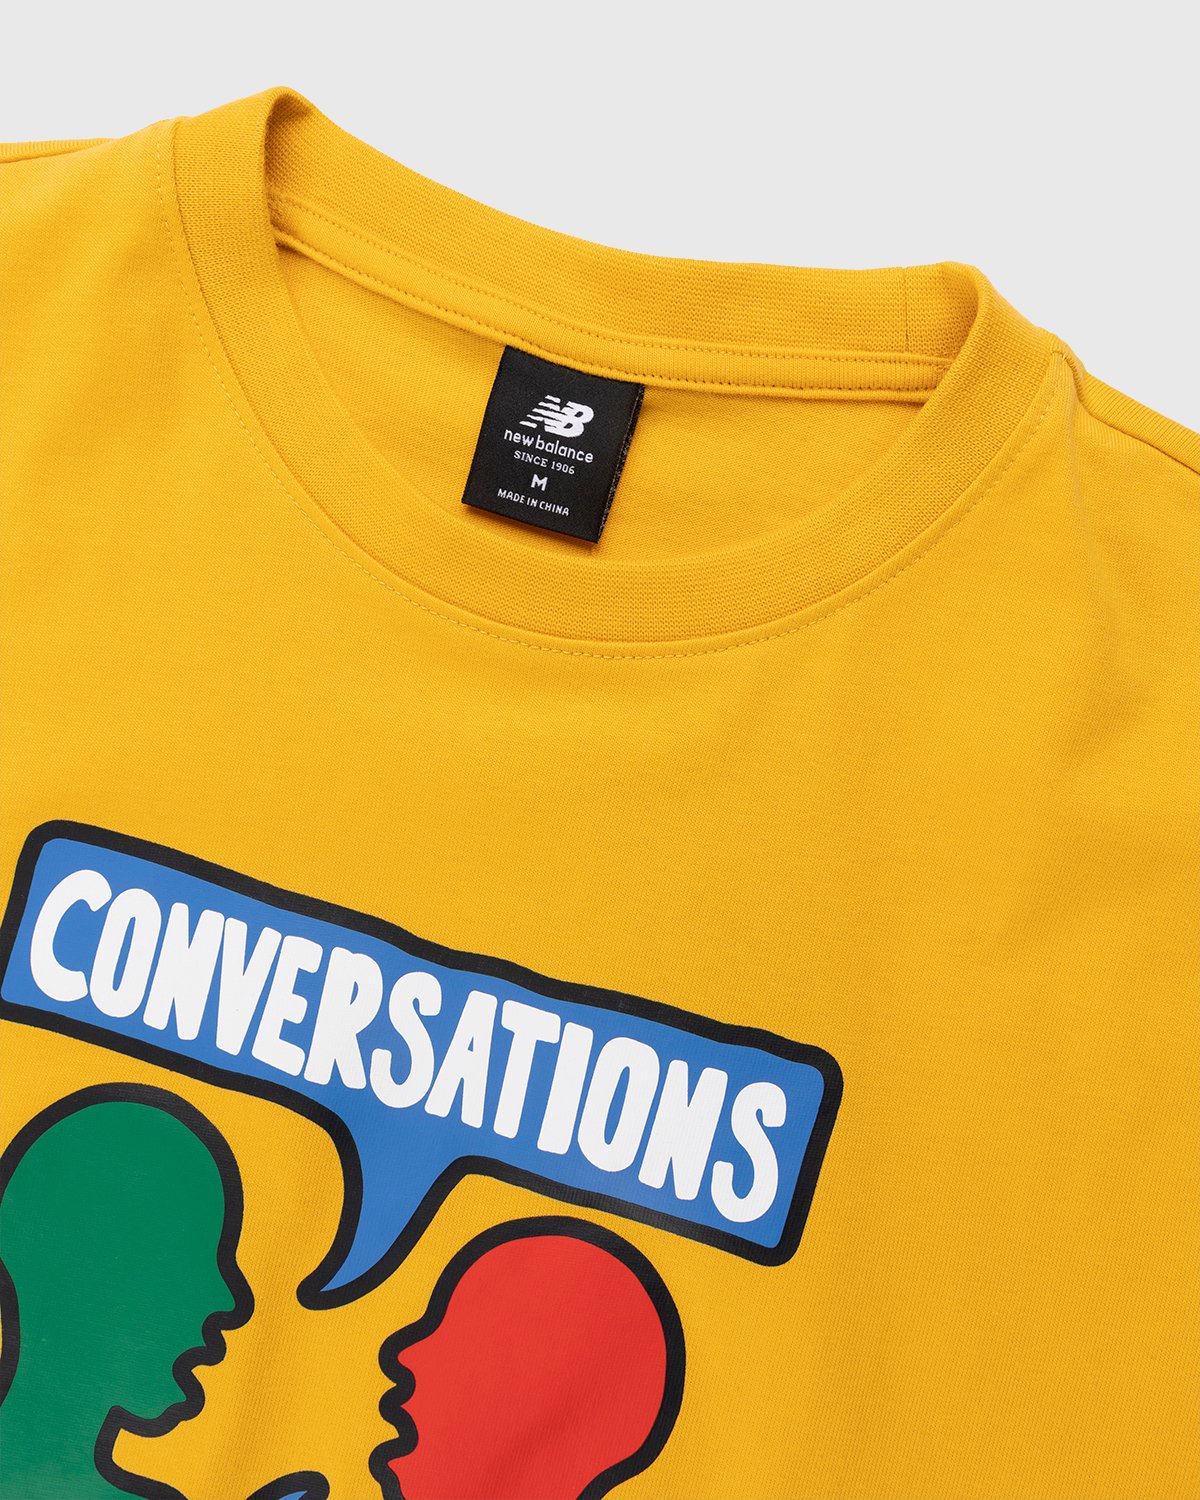 New Balance - Conversations Amongst Us T-Shirt Aspen Yellow - Clothing - Yellow - Image 4